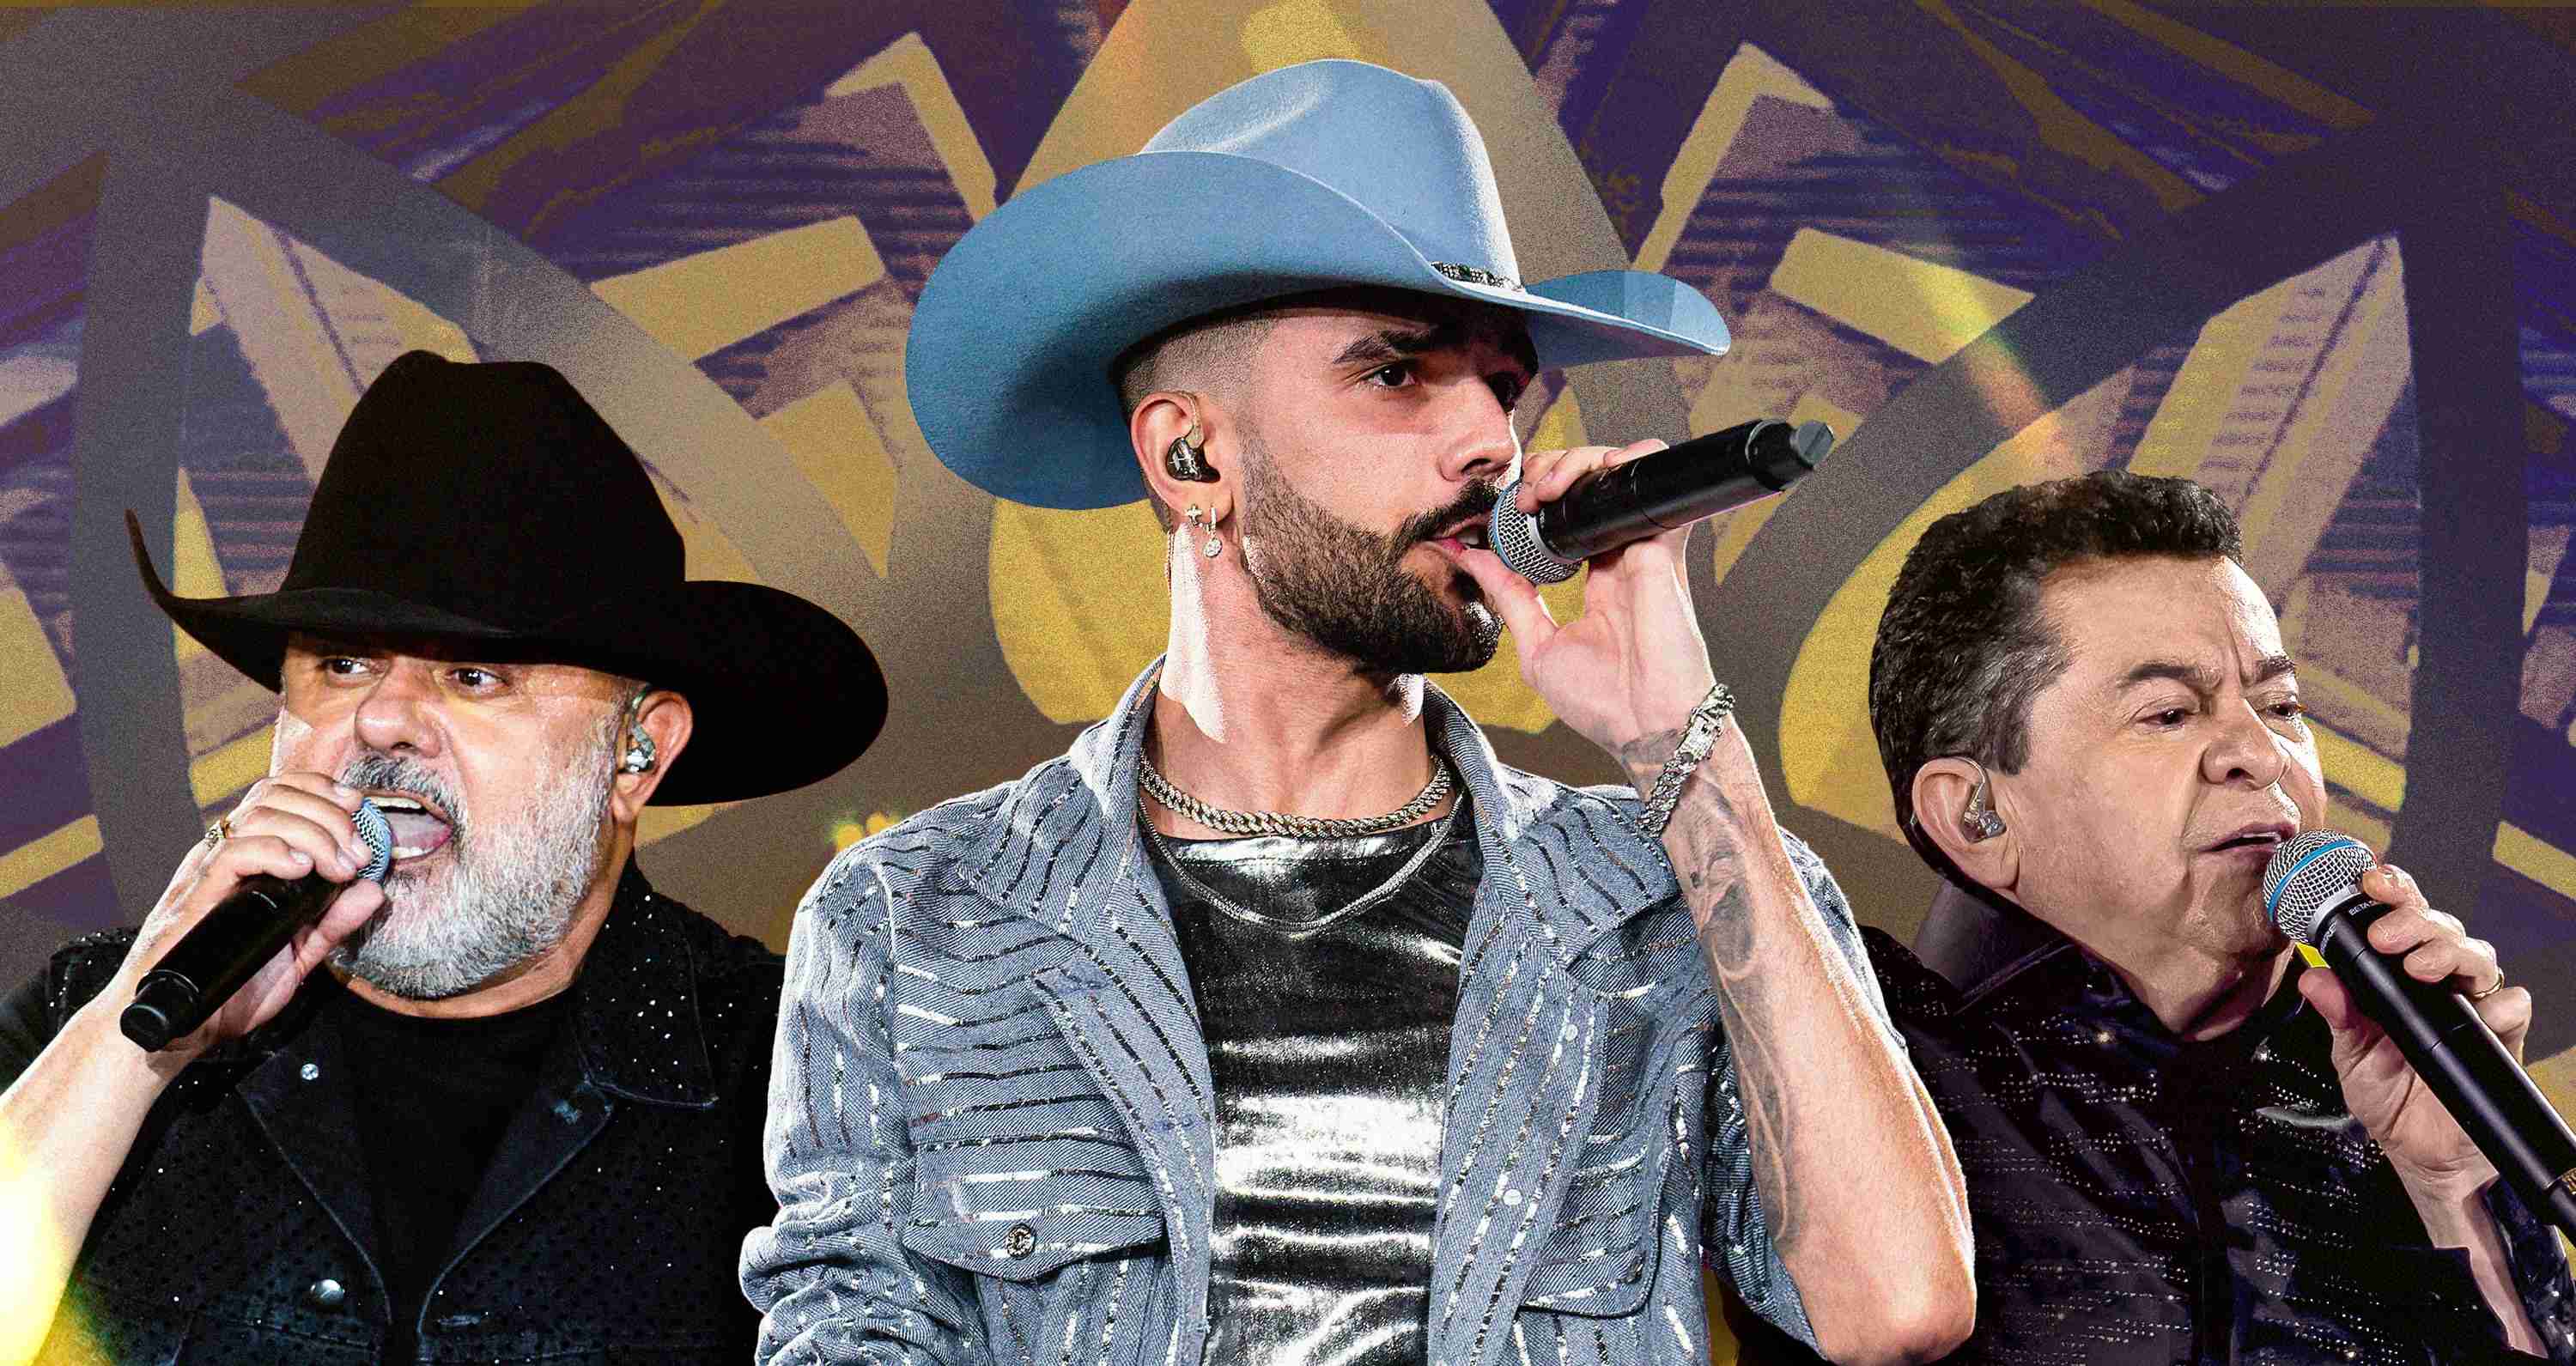 Rionegro e Solimões lançam música inédita "Cowboy Chora" com participação de Luan Pereira